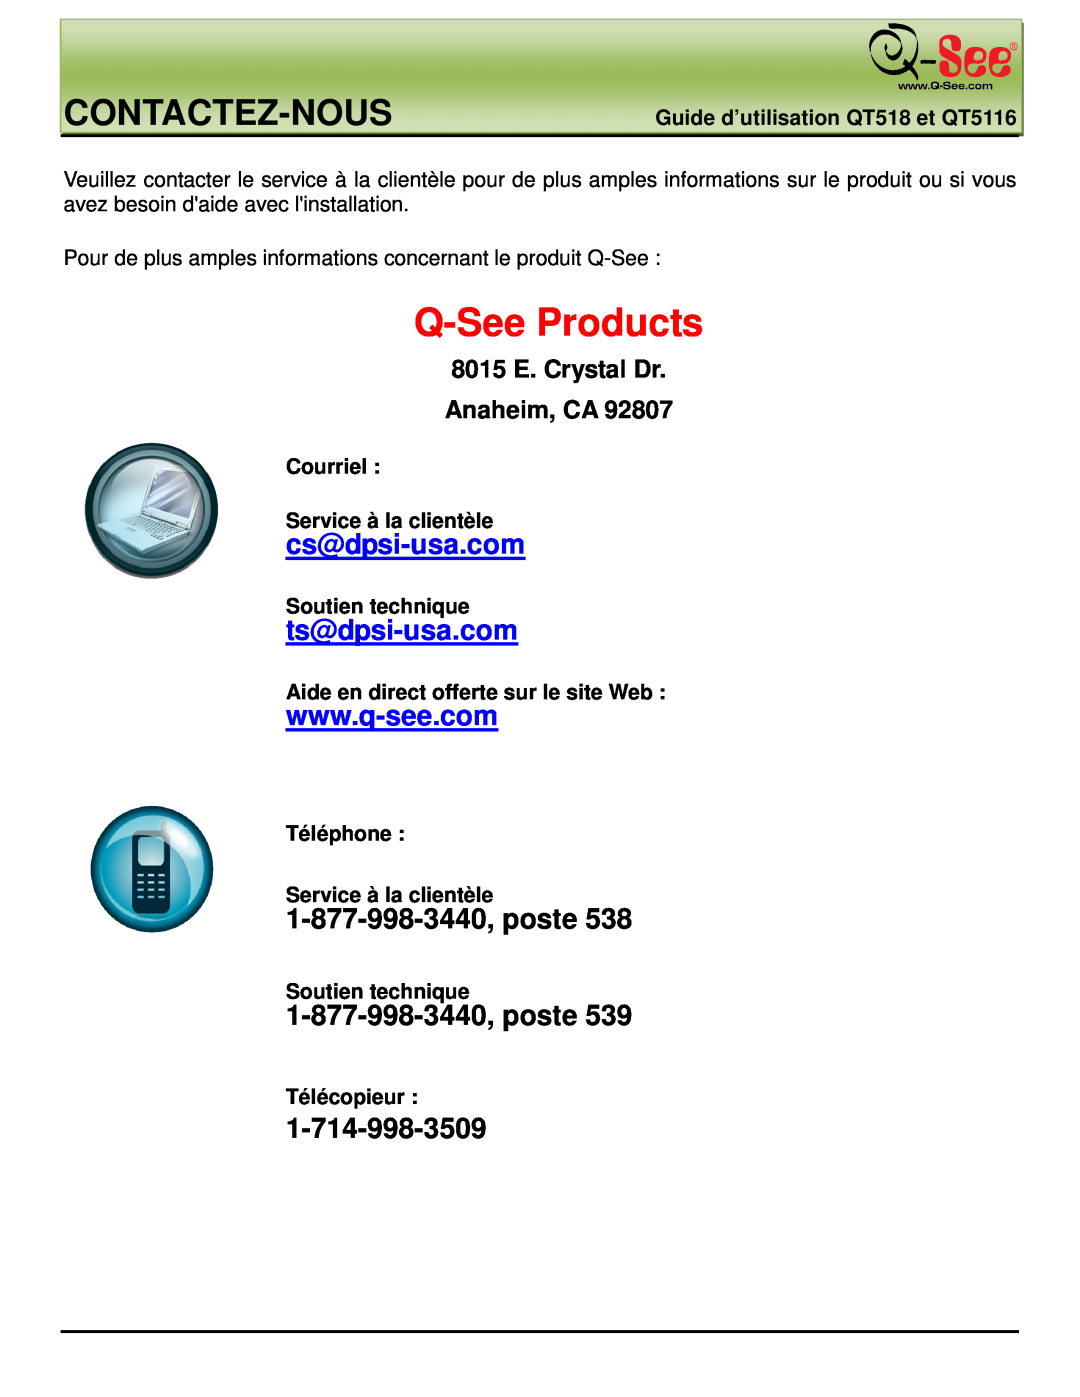 Q-See manual Contactez-Nous, 1-877-998-3440,poste, 8015 E. Crystal Dr Anaheim, CA, Guide d’utilisation QT518 et QT5116 